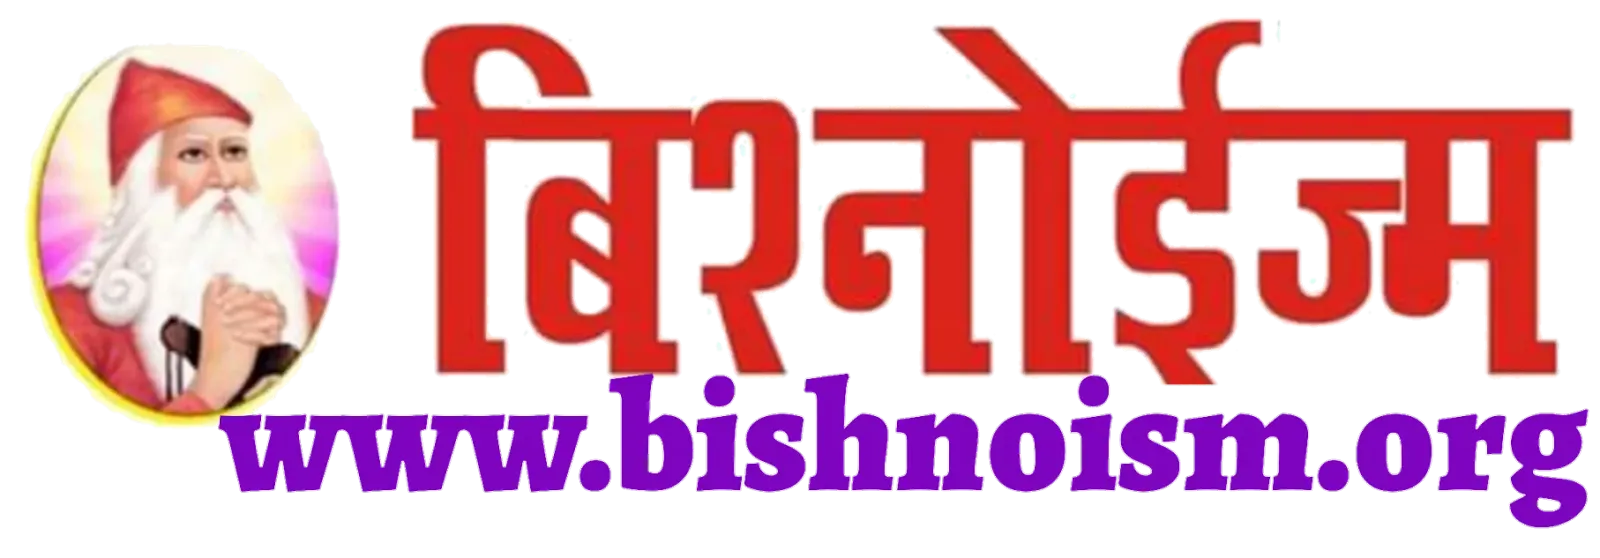 Bishnoi News : बिश्नोई समाज का एक मात्र विश्वसनीय न्यूज़ पॉर्टल 